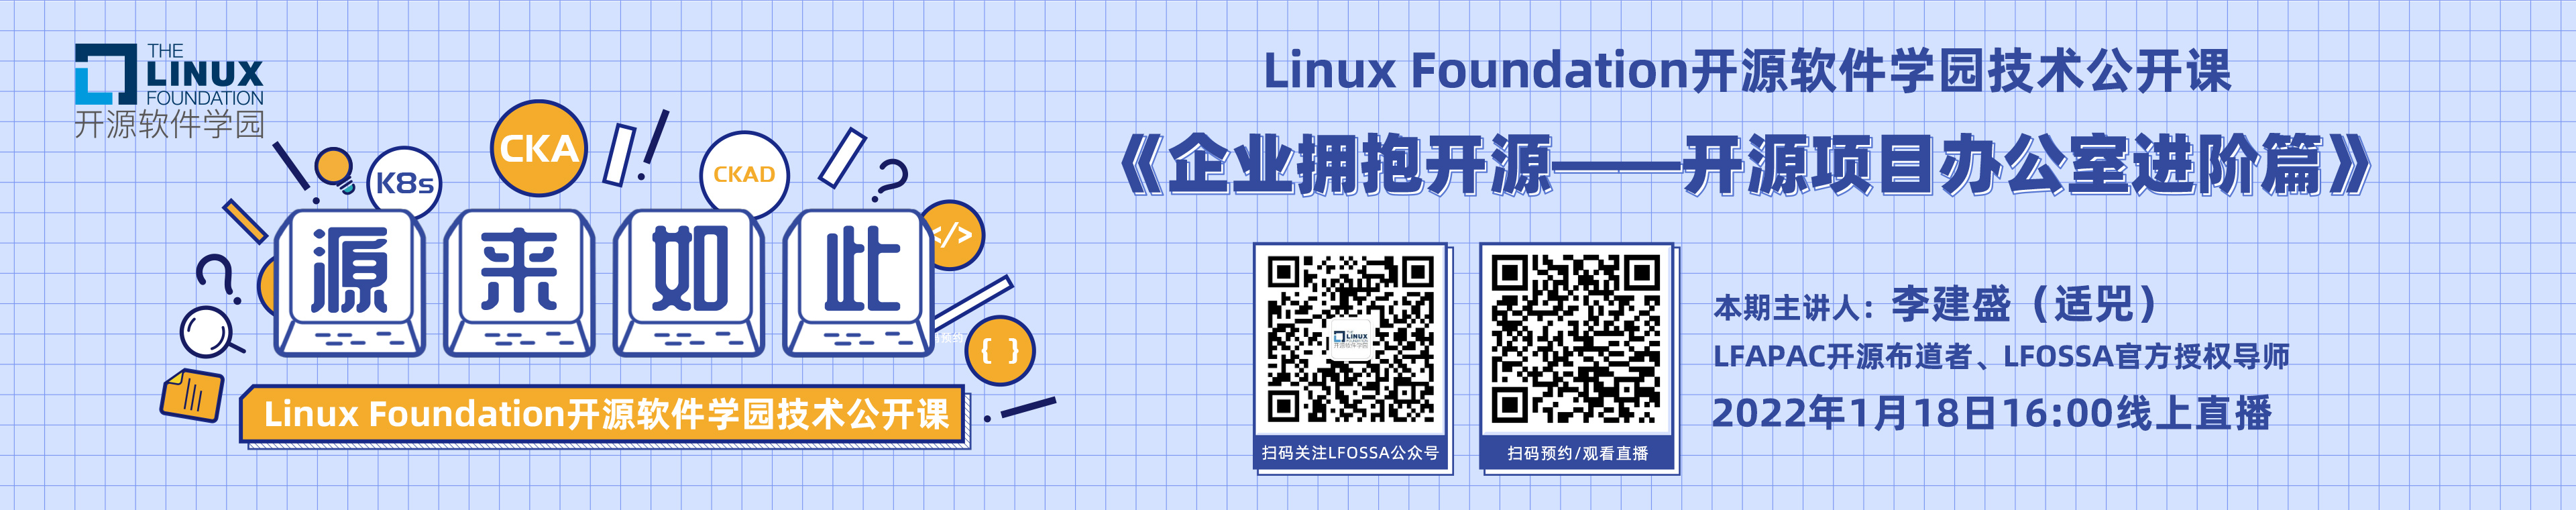 Linux基金会开源软件学园技术公开课|《企业拥抱开源——开源项目办公室进阶篇》